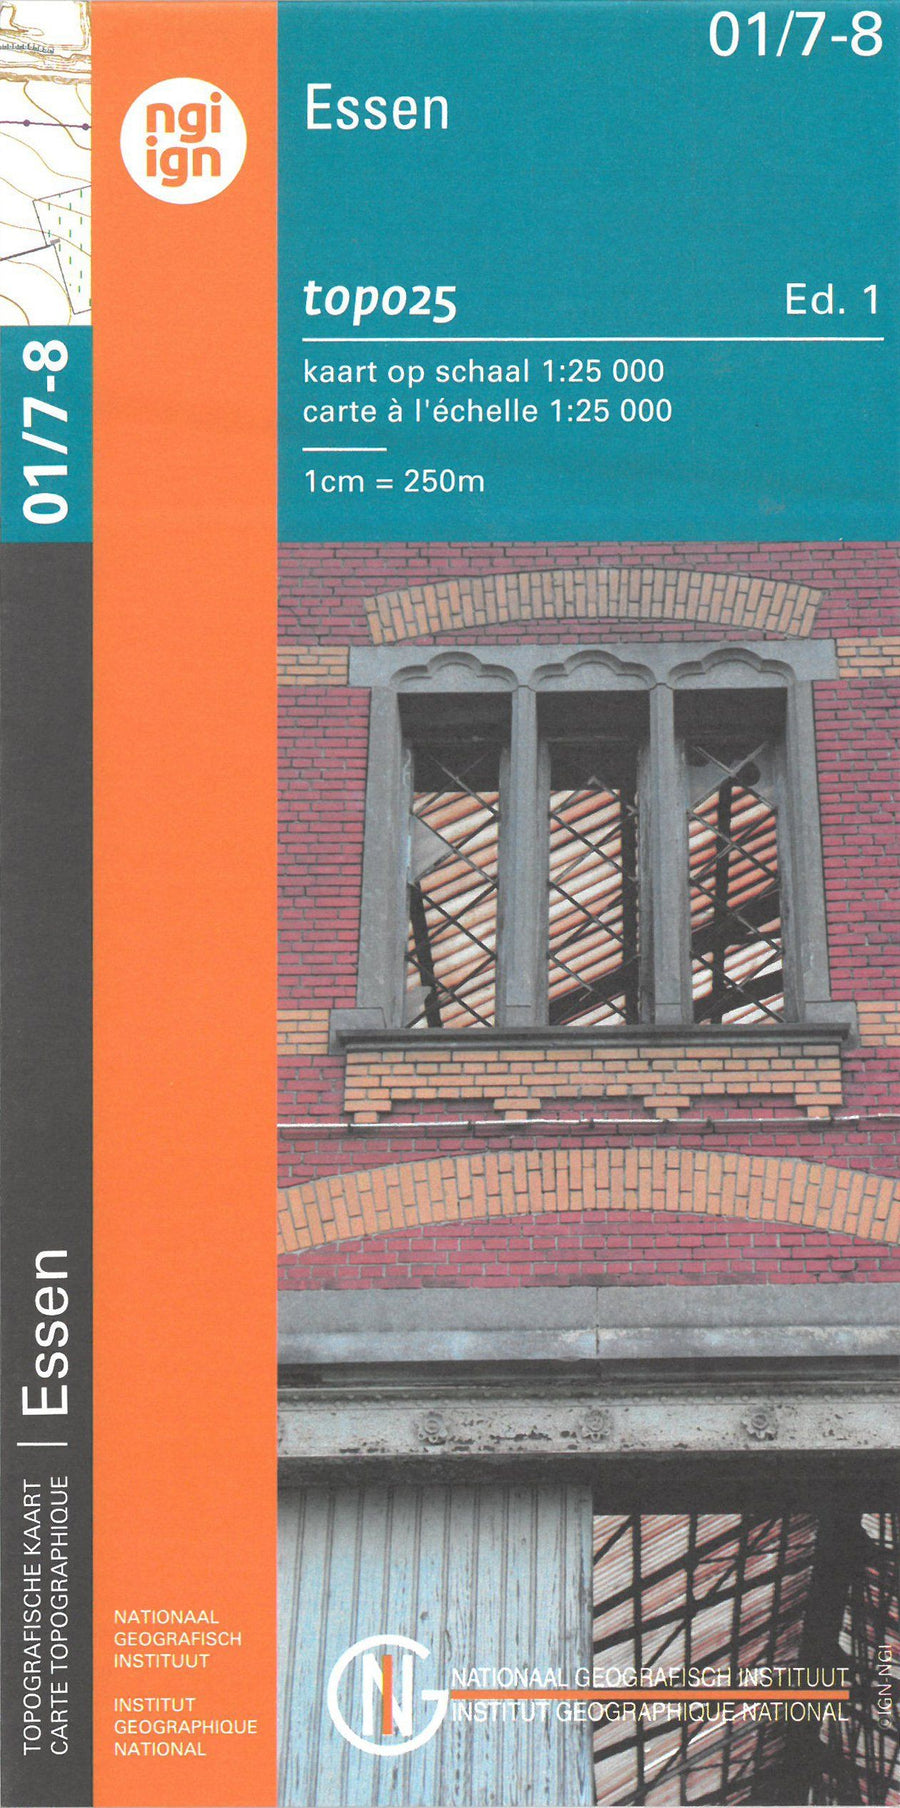 Carte topographique n° 01/7-8 - Essen (Belgique) | NGI topo 25 carte pliée IGN Belgique 